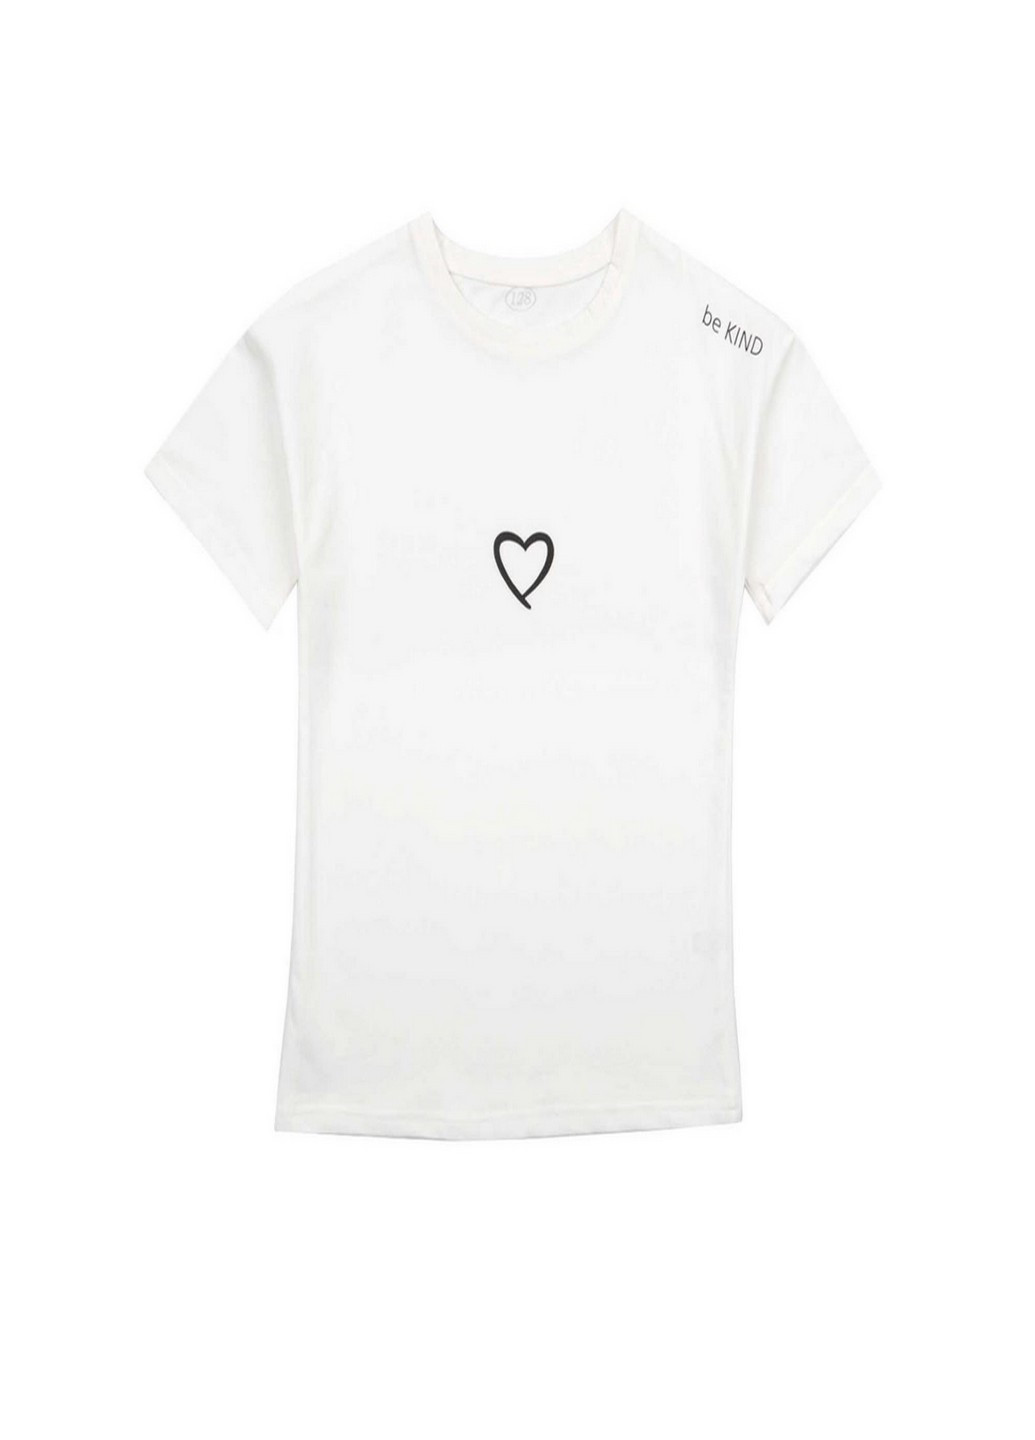 Молочная летняя футболка для девочки (сердце) Фламинго Текстиль